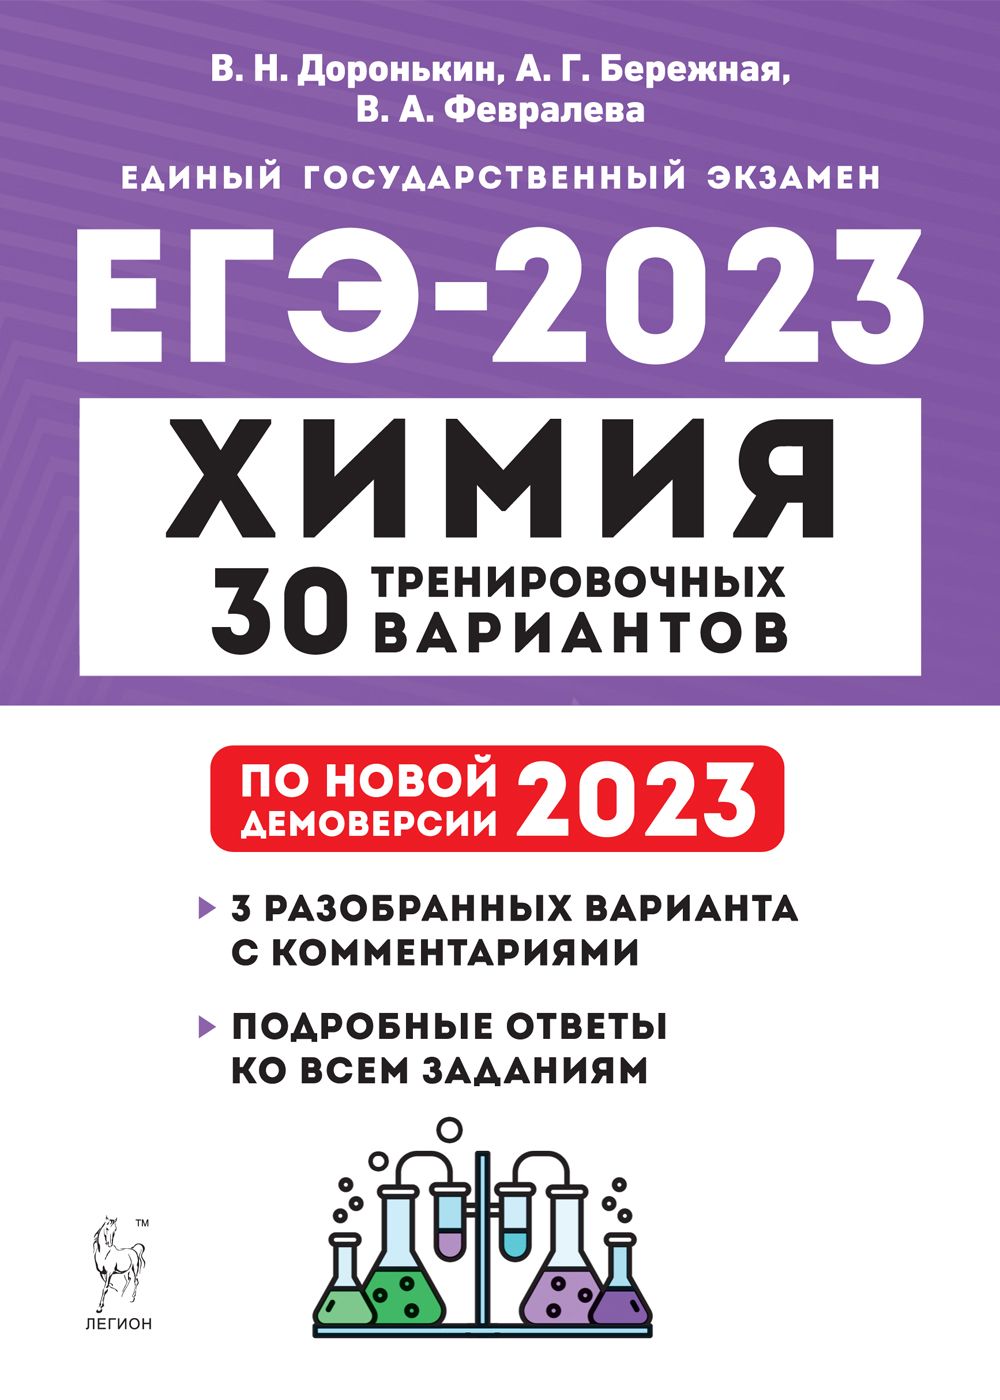 Химия. Подготовка к ЕГЭ-2023. 30 тренировочных вариантов по демоверсии 2023 года